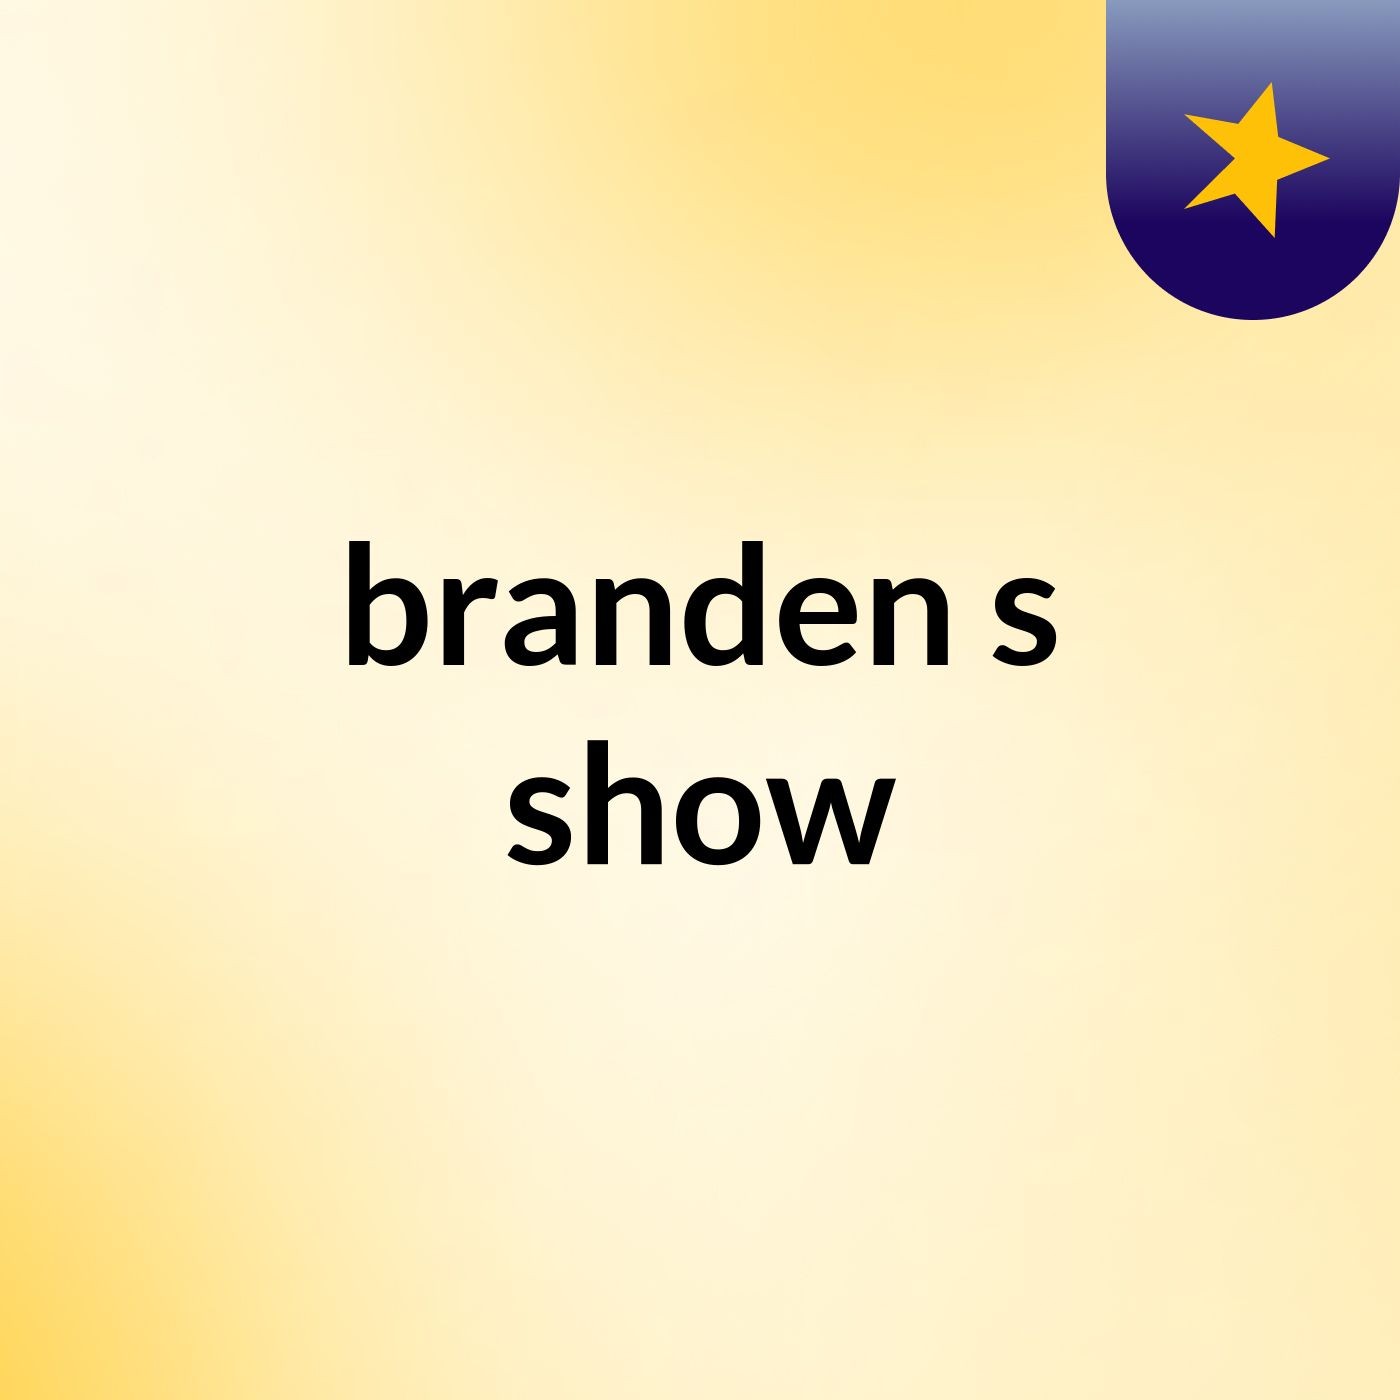 branden's show